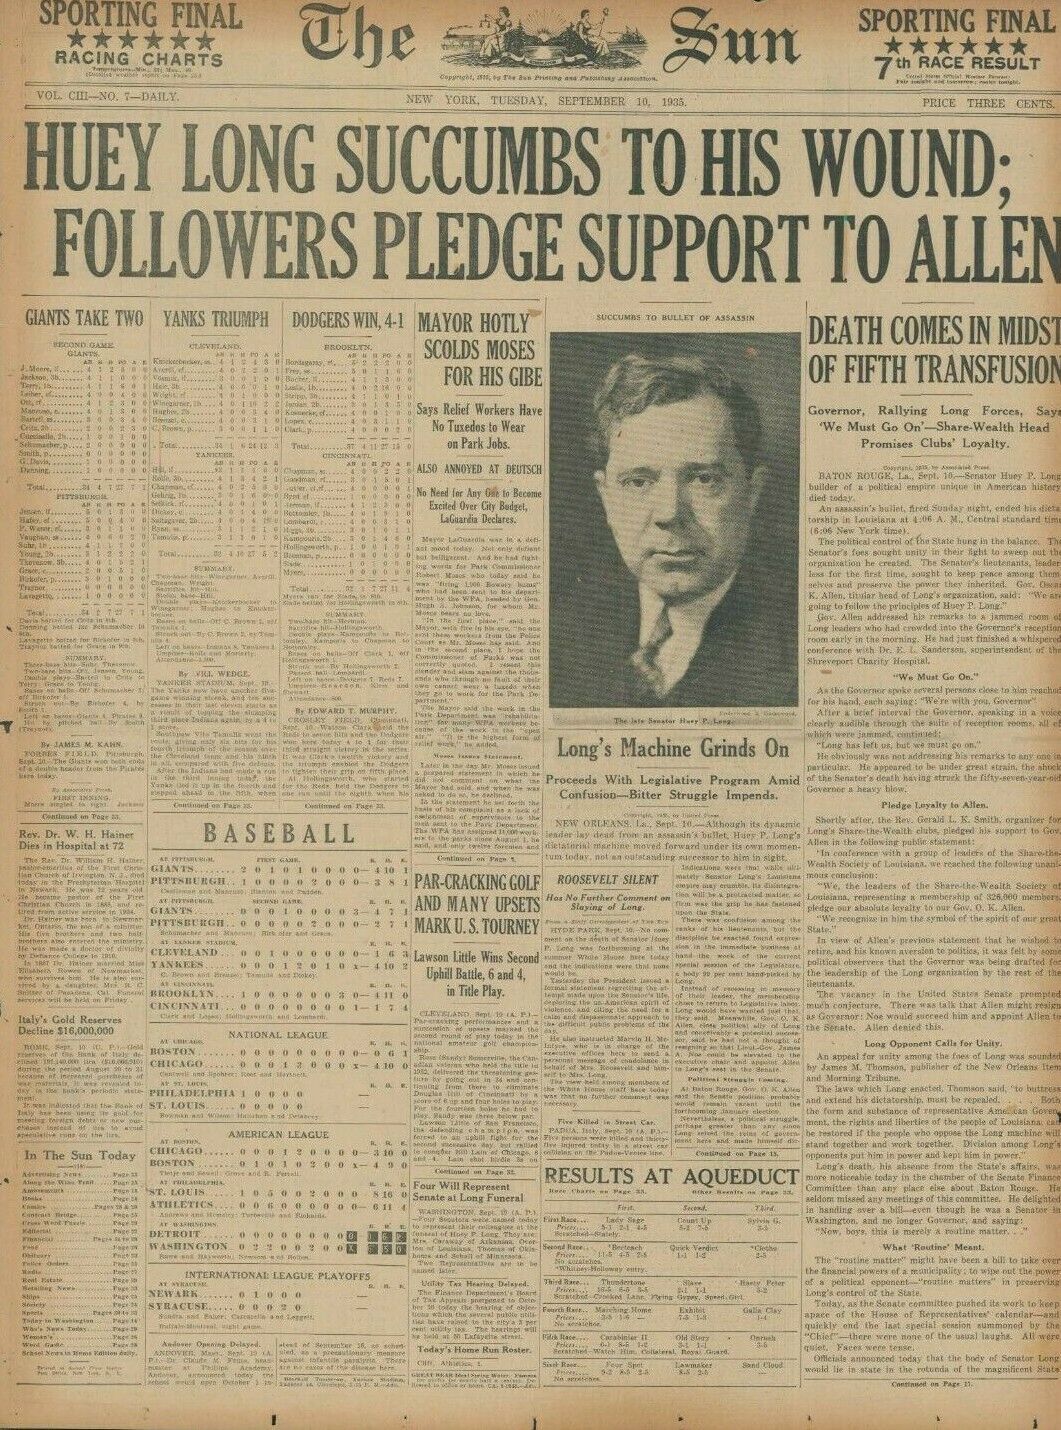 Senator Huey Long Dead Assassin Carl Weiss Roosevelt Silent September 10 1935 